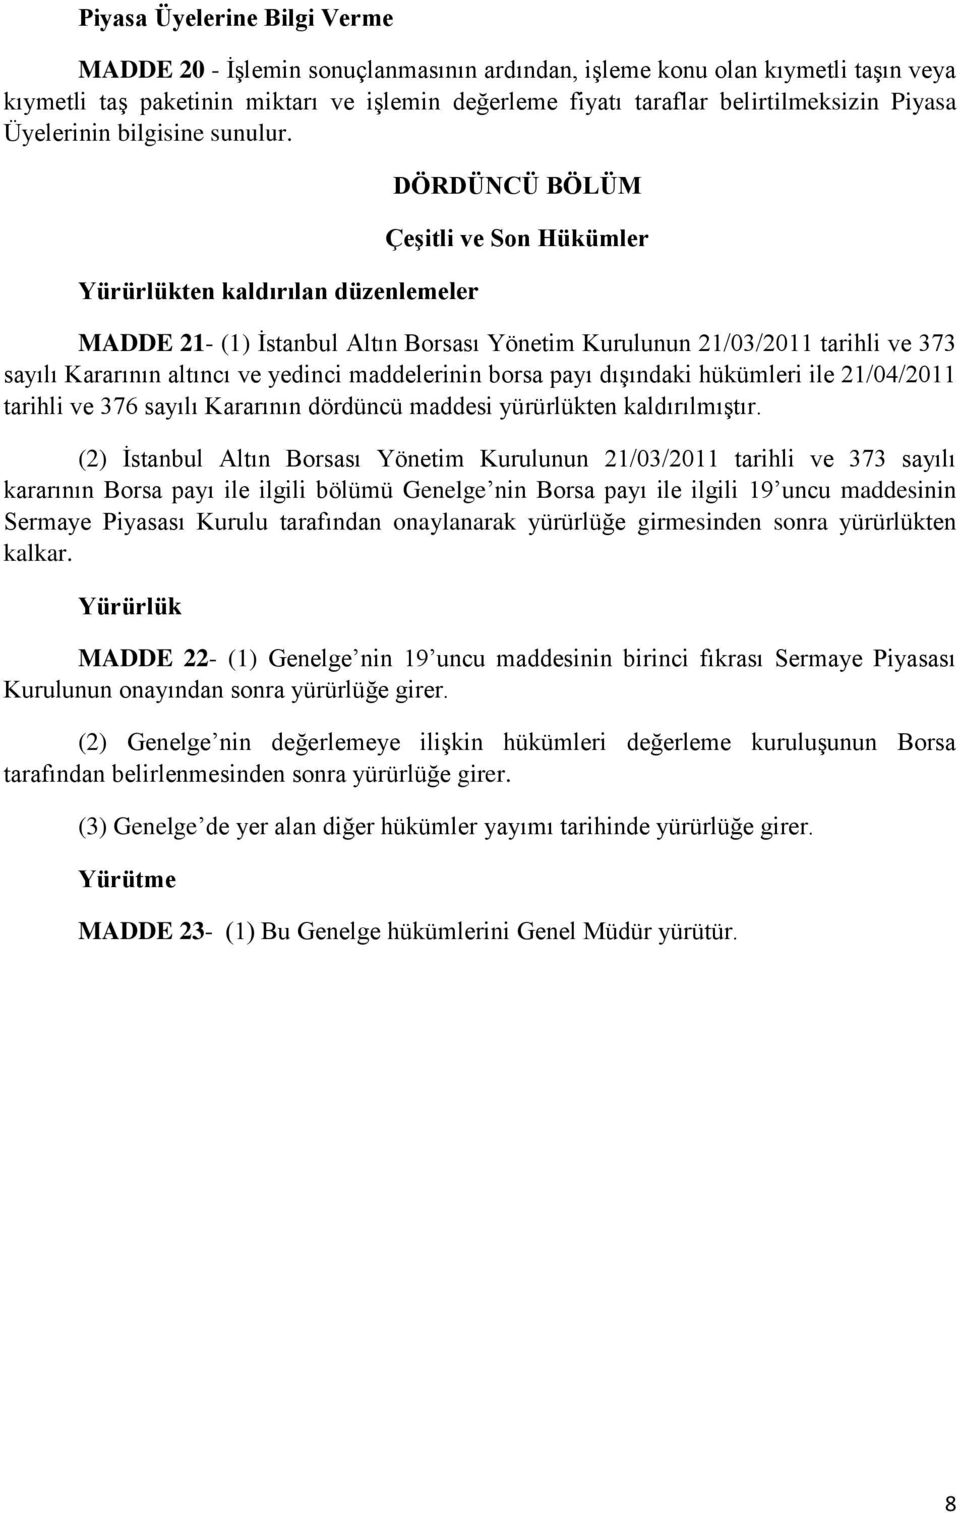 Yürürlükten kaldırılan düzenlemeler DÖRDÜNCÜ BÖLÜM Çeşitli ve Son Hükümler MADDE 21- (1) İstanbul Altın Borsası Yönetim Kurulunun 21/03/2011 tarihli ve 373 sayılı Kararının altıncı ve yedinci